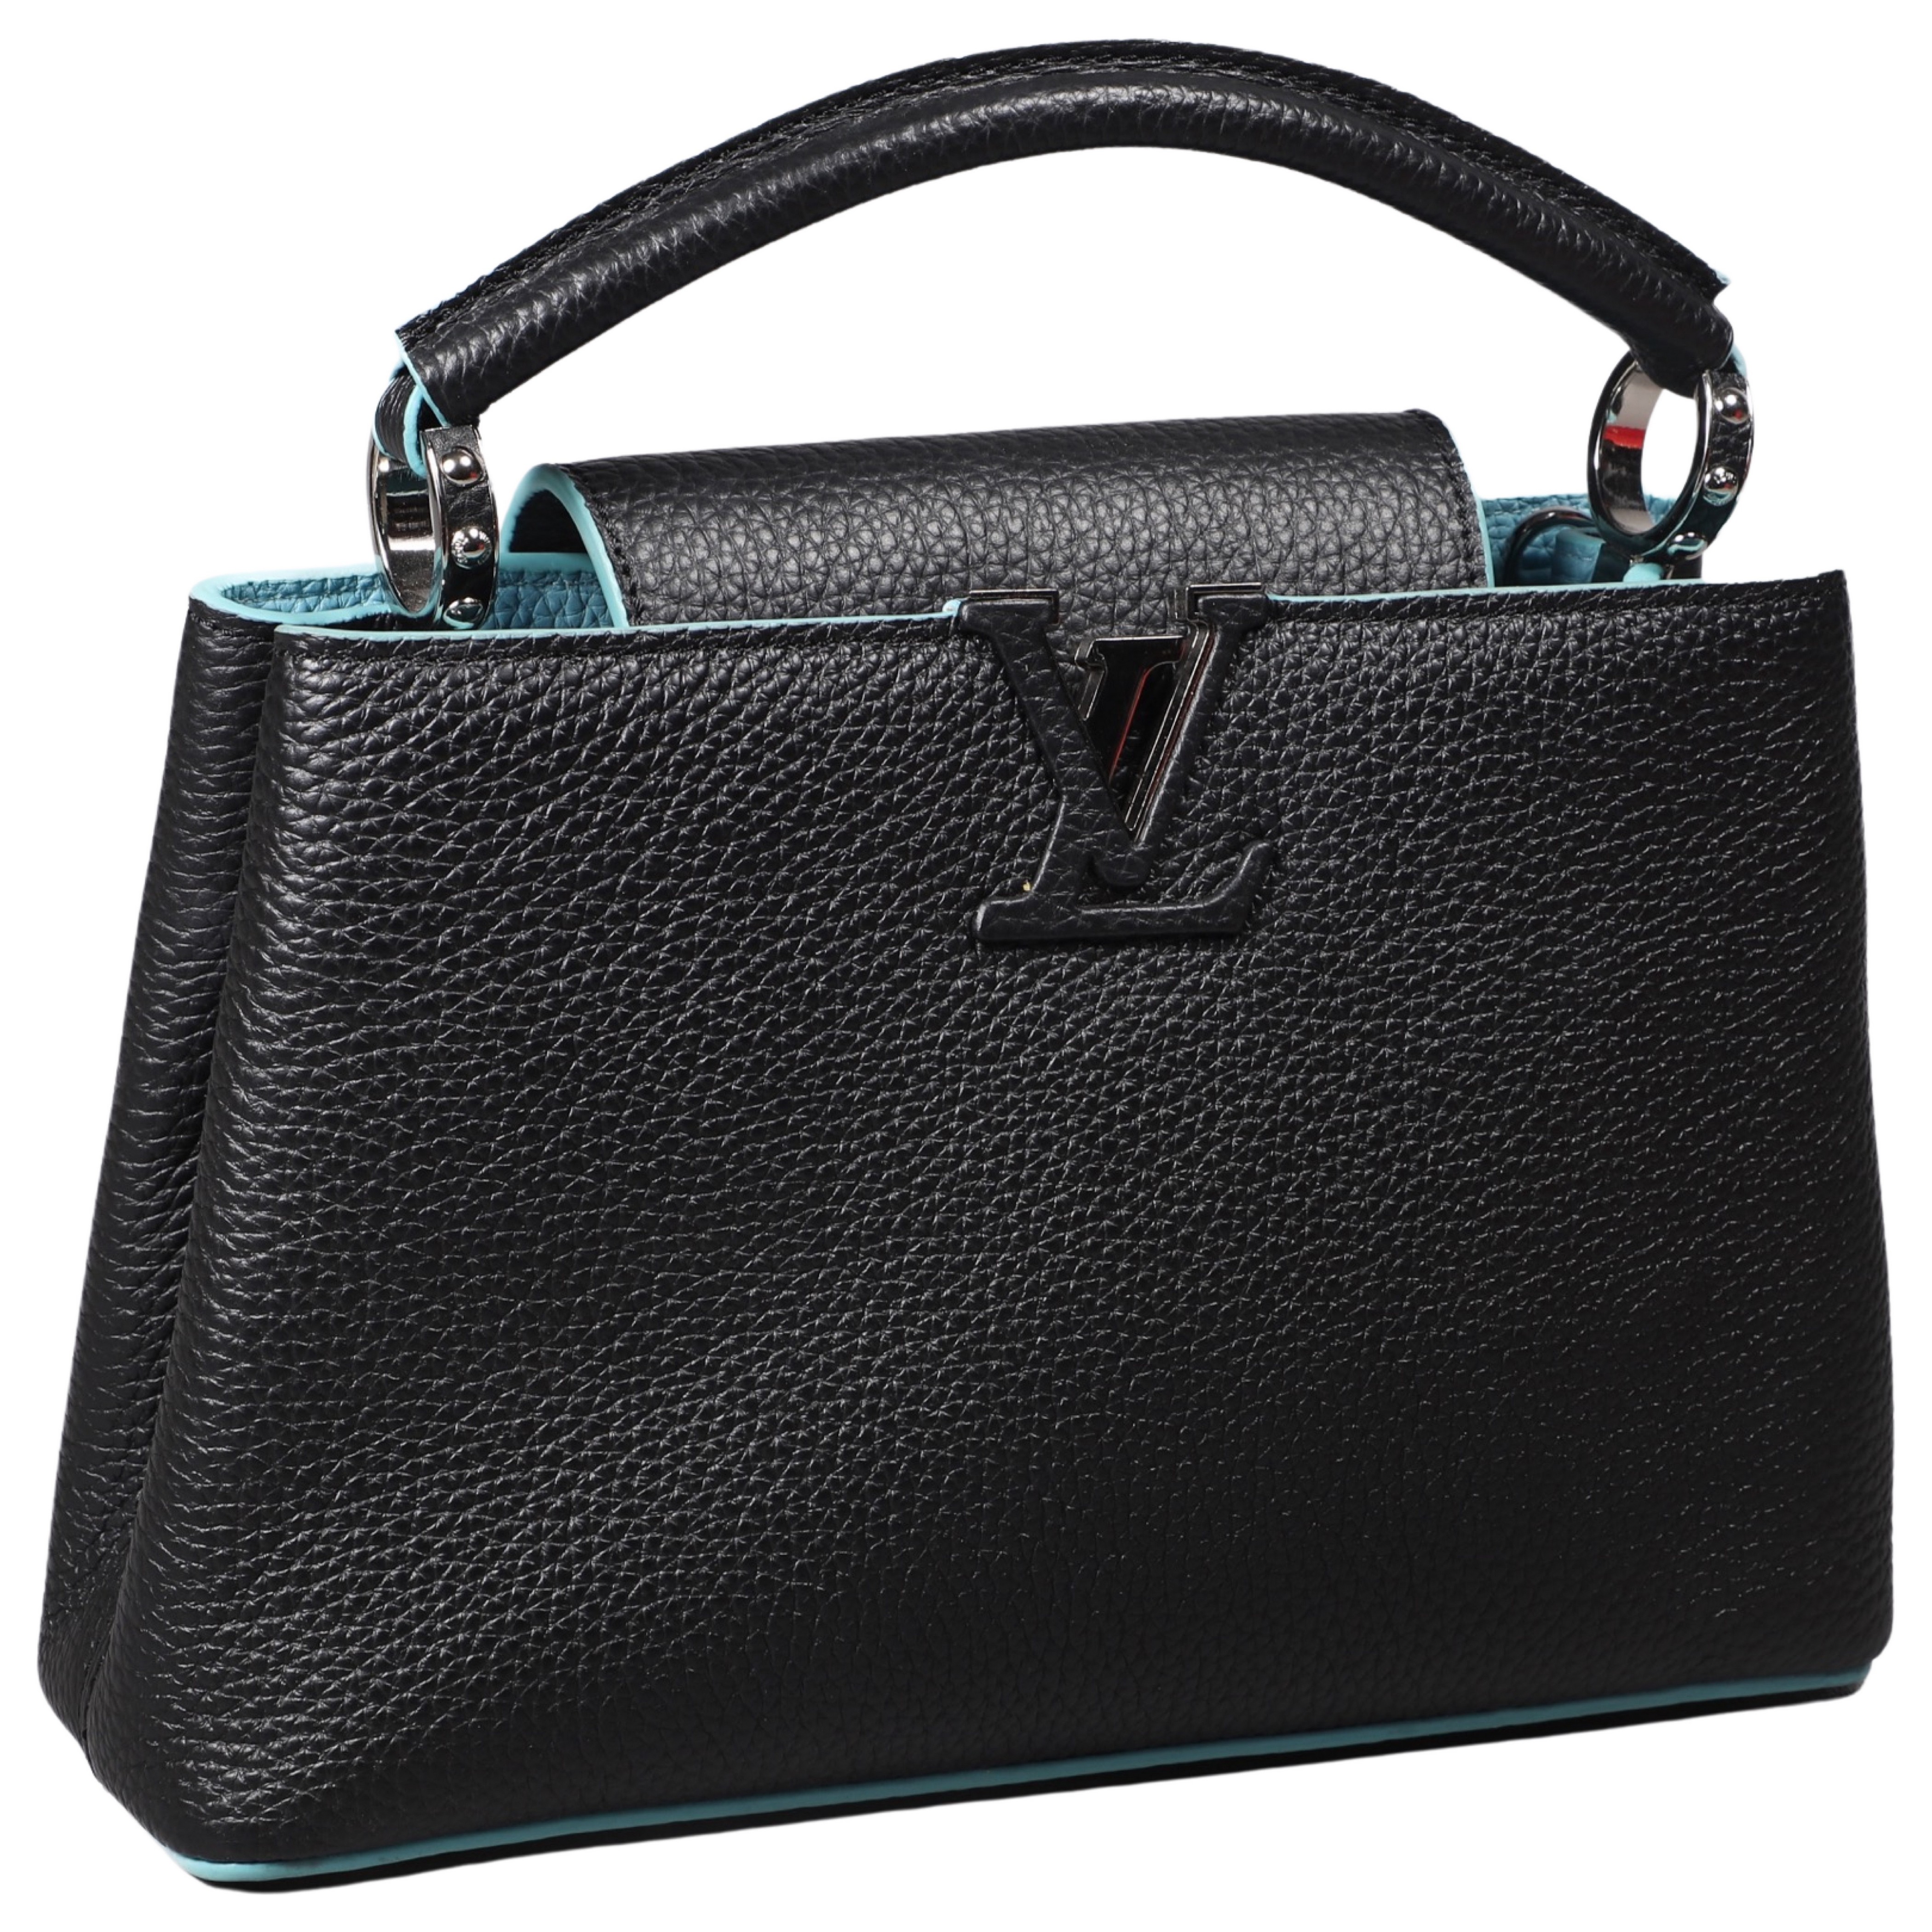 Louis Vuitton style purse black 3b504e